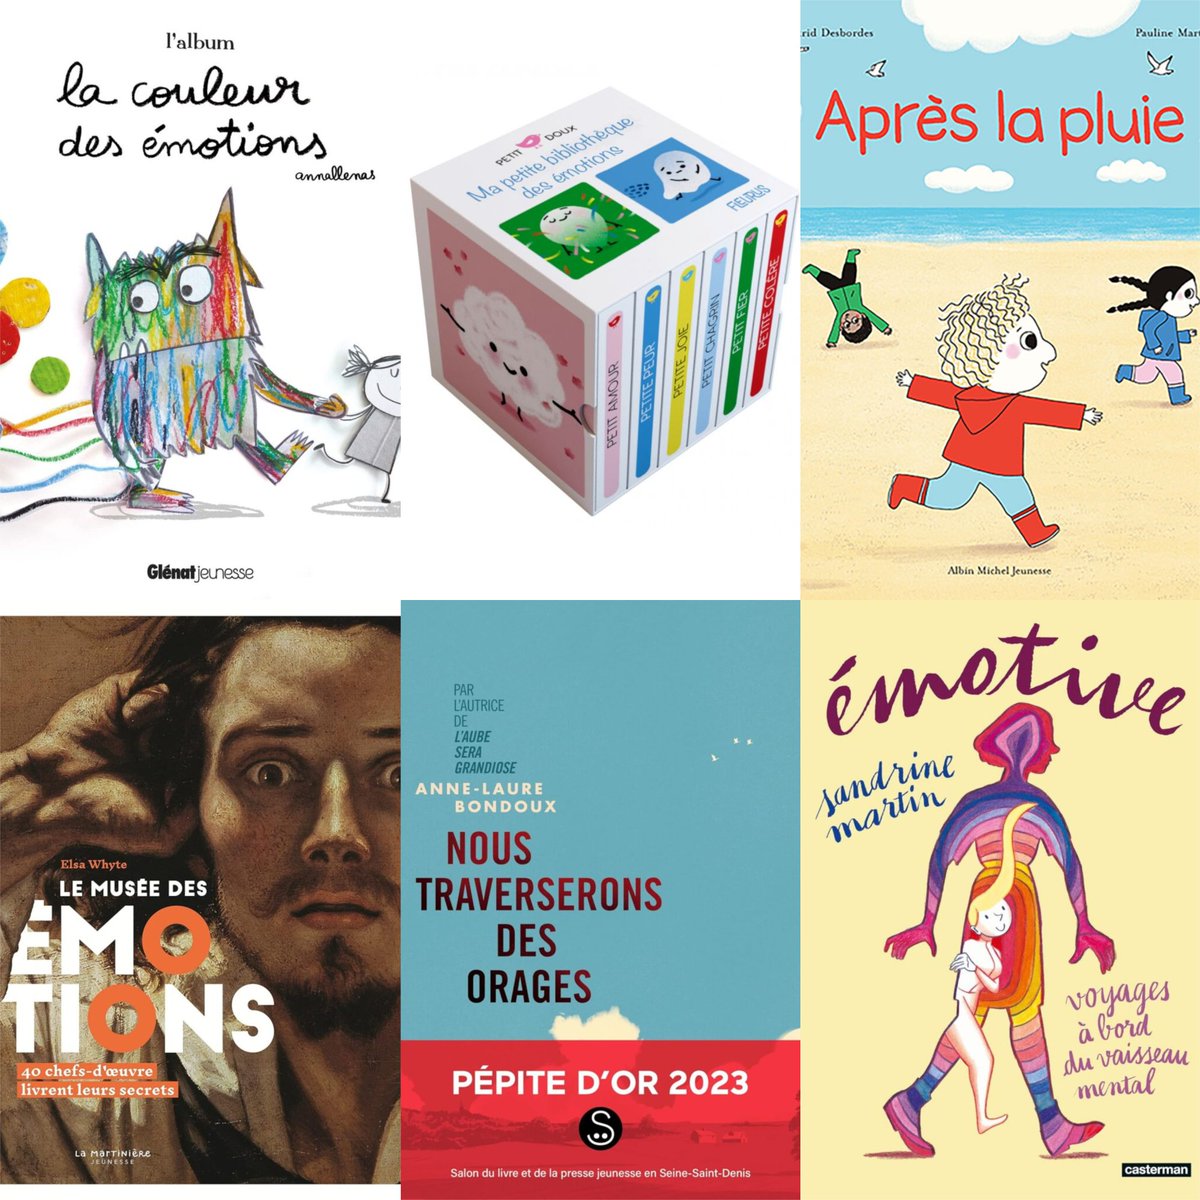 Découvrez notre sélection des meilleurs livres jeunesse pour aborder les émotions avec les enfants ! 😍 🚸 📚 😂 📖  😱 

Lire l'article👉urlz.fr/qjY4

#culturadvisor #culture #livres #lecture #lire #enfants #familles #éducation #apprentissage #émotions #sélection